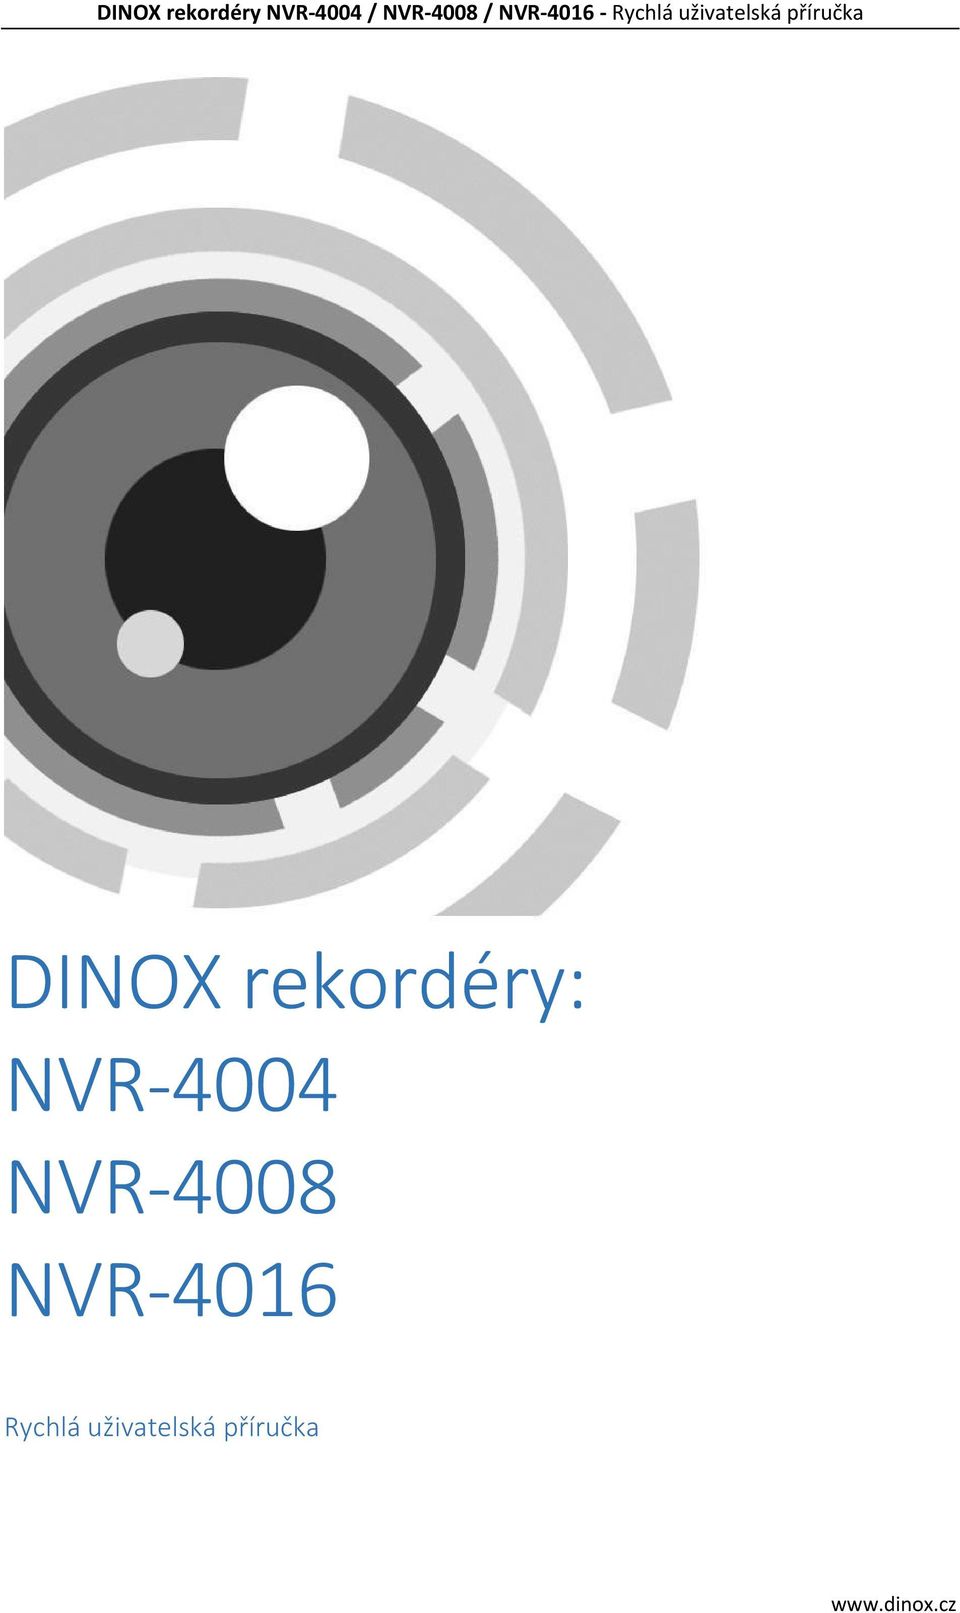 NVR-4016 Rychlá